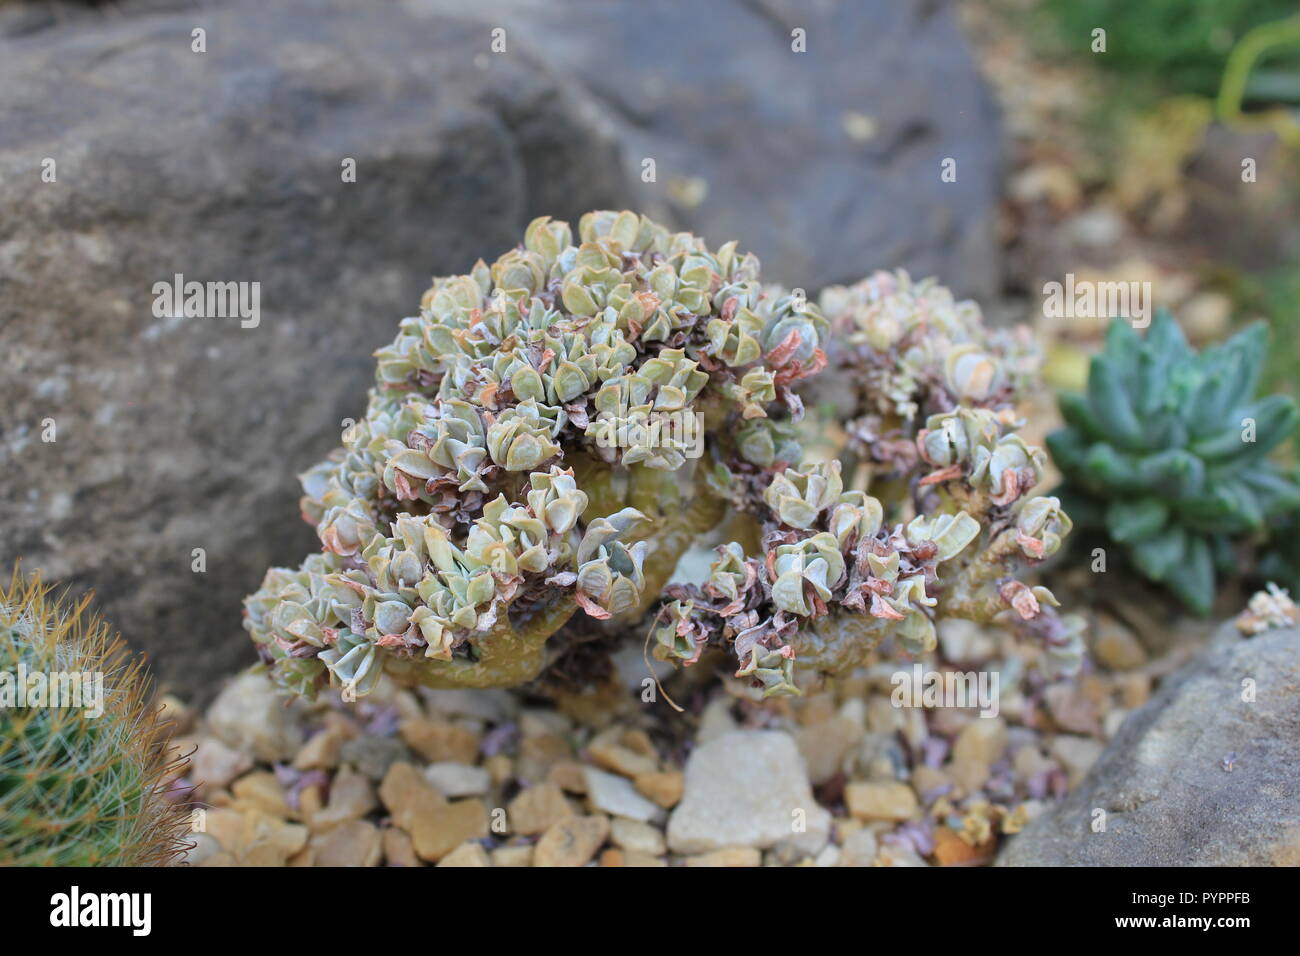 Kultivierte ornamentale Sonnenaeonium Sukulente Wüstenpflanze, die in einer trockenen Umgebung wächst. Stockfoto